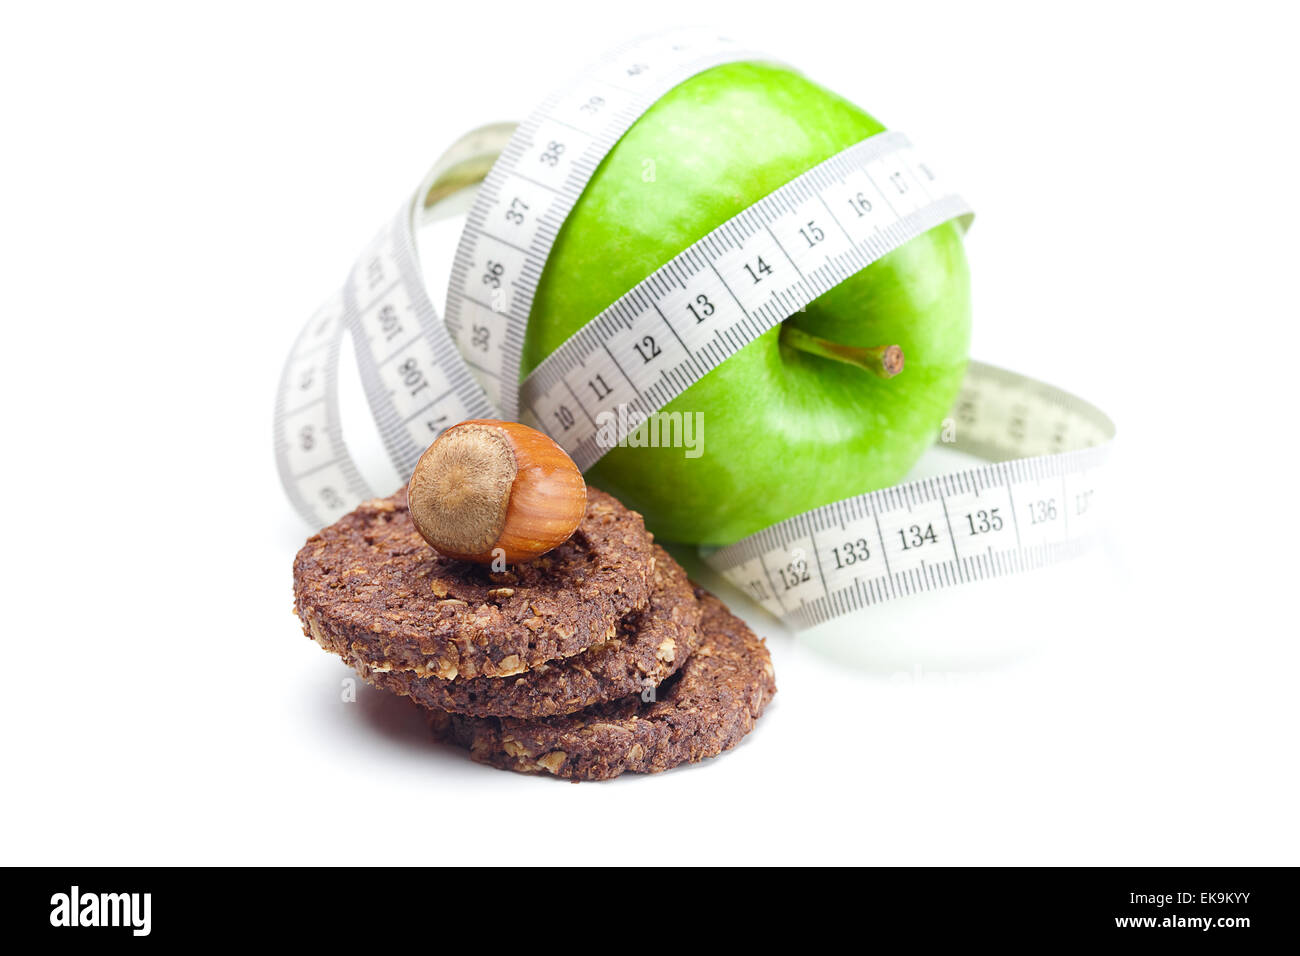 Apple, dadi, cookie e nastro di misura isolati su bianco Foto Stock